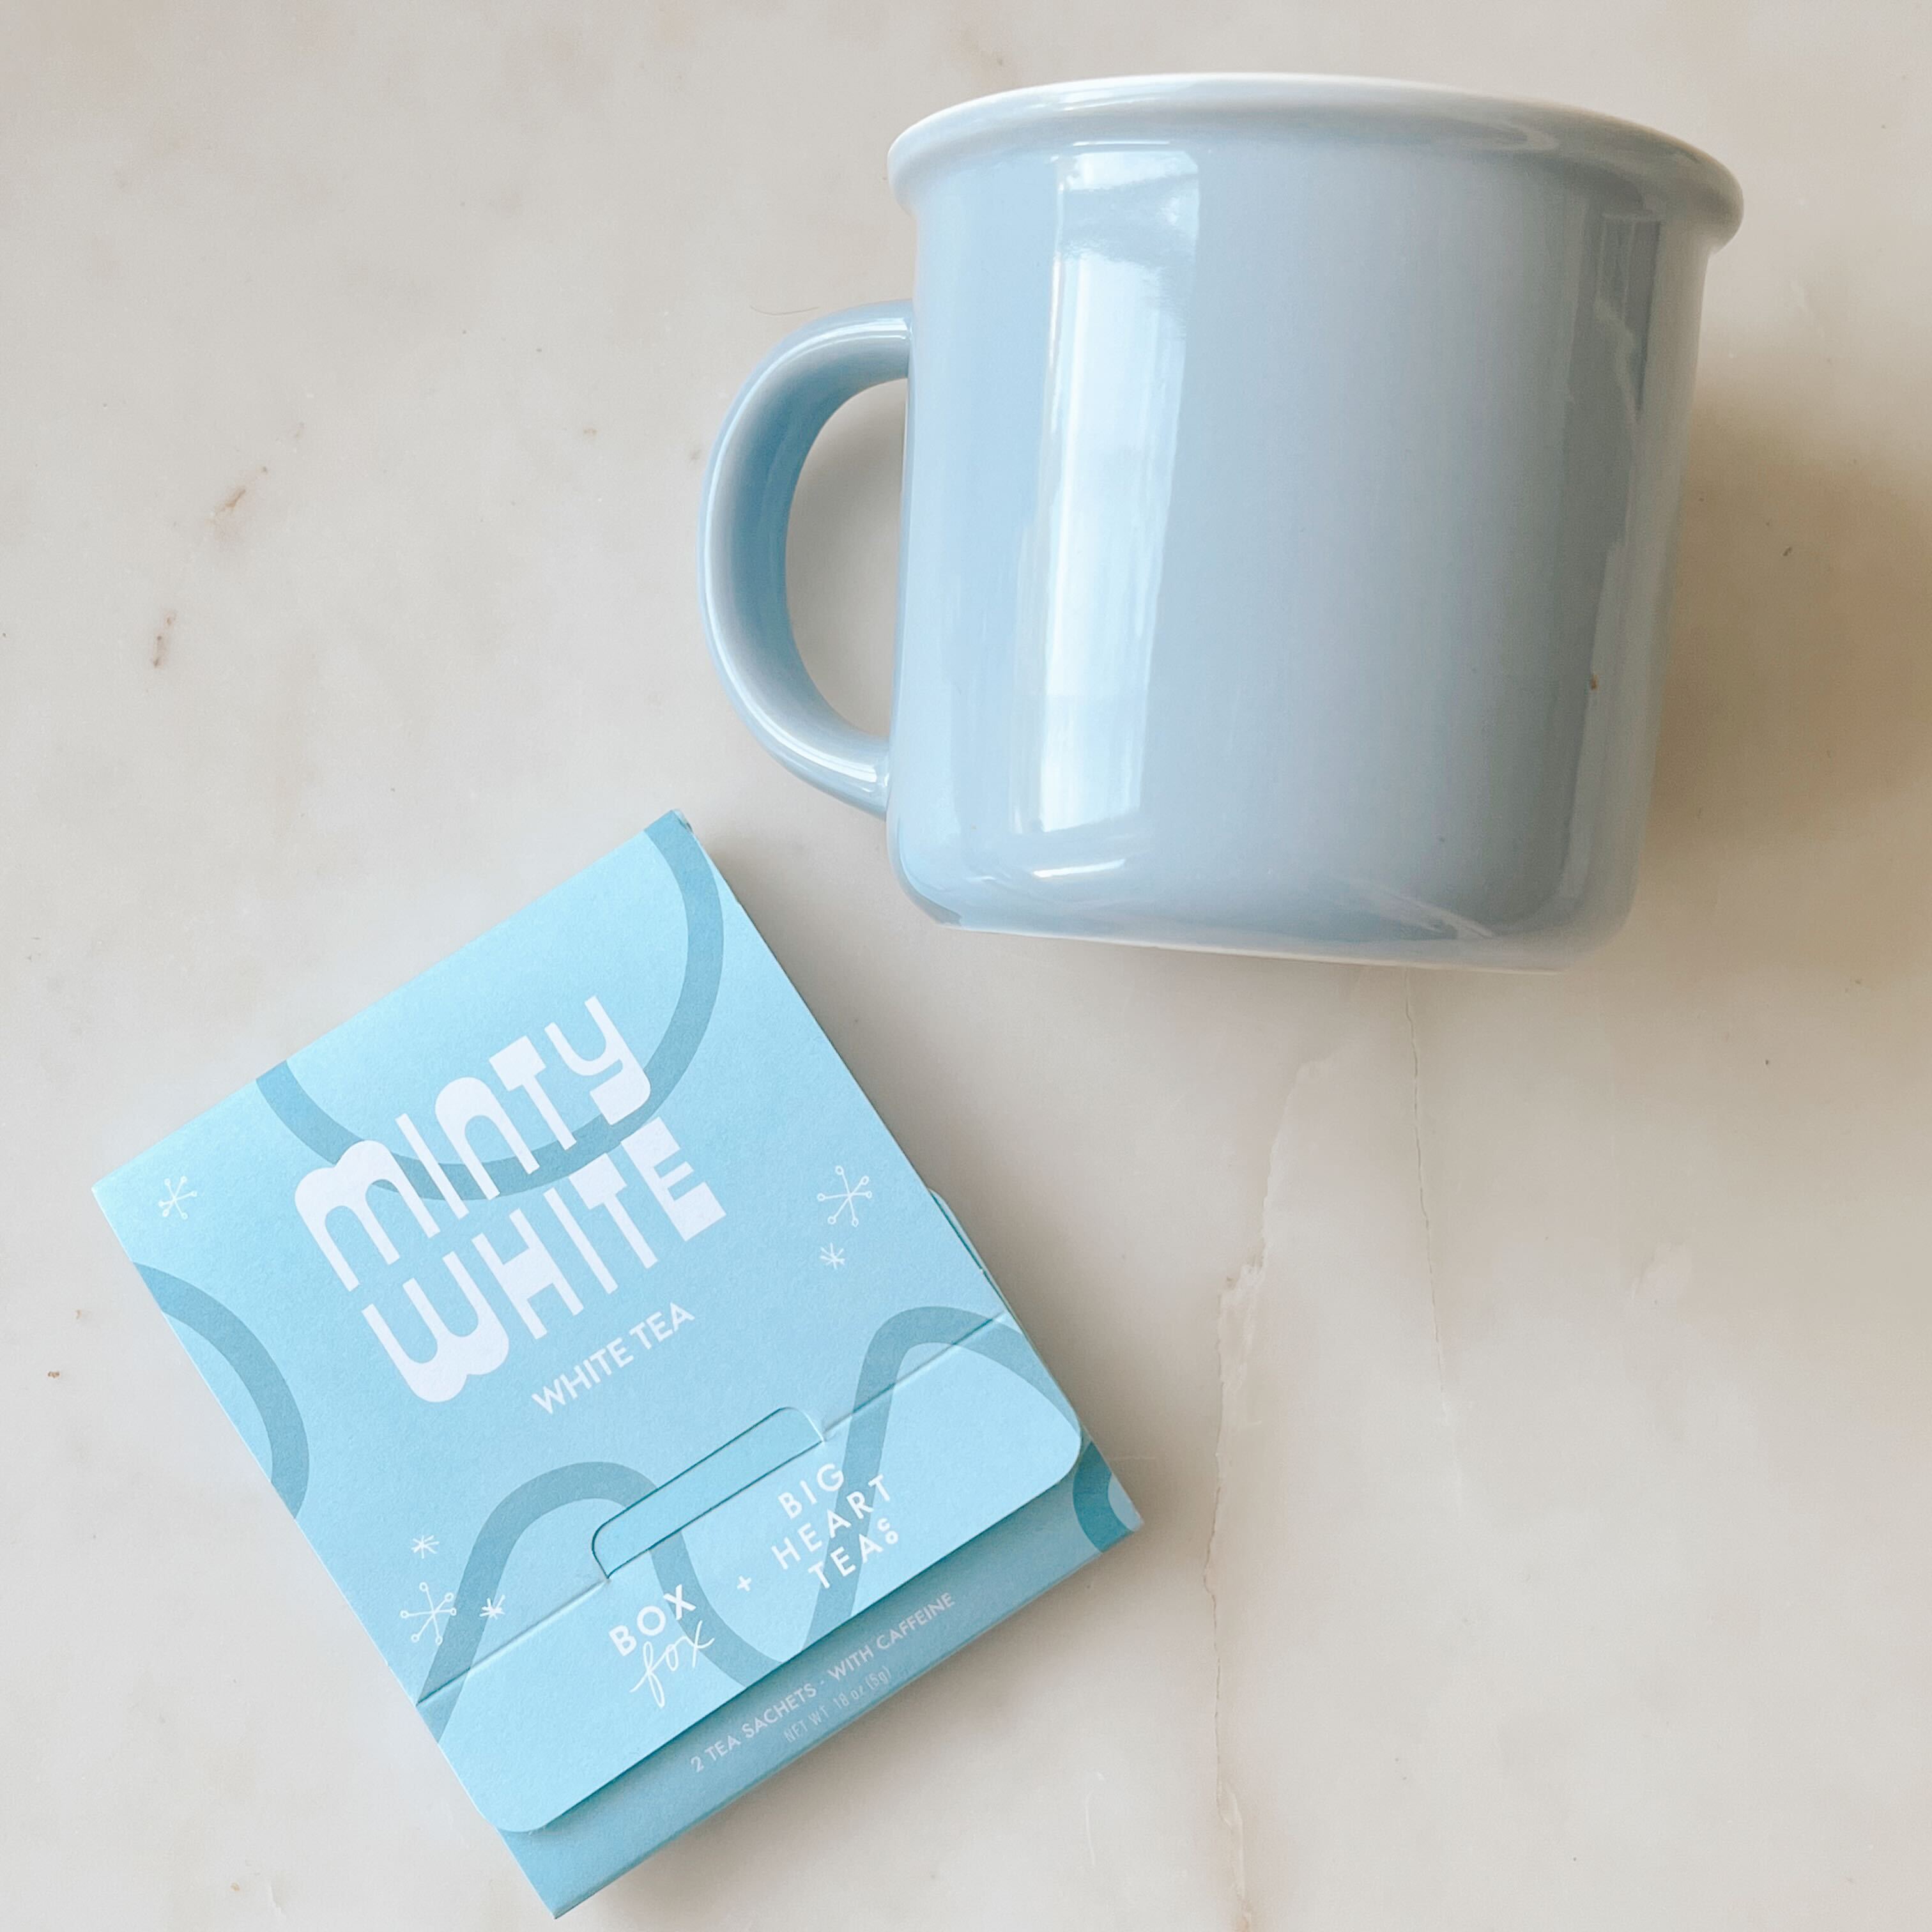 Minty White Tea Sachet with blue mug